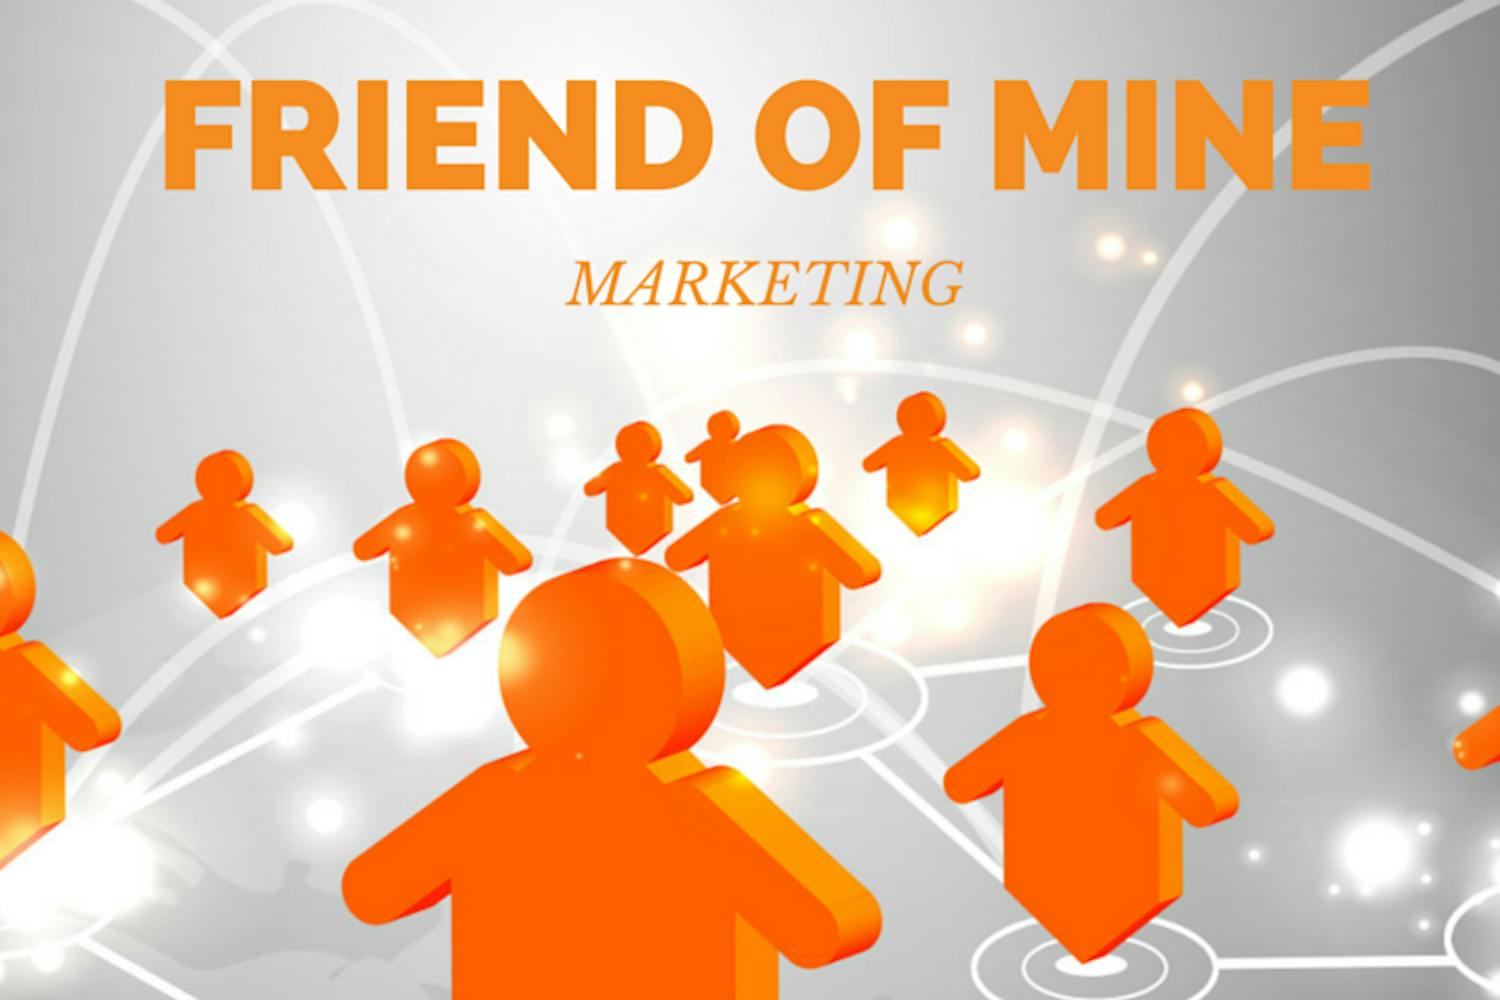 Illustrasjon av flere oransje personer med tekst "Friend of mine marketing"